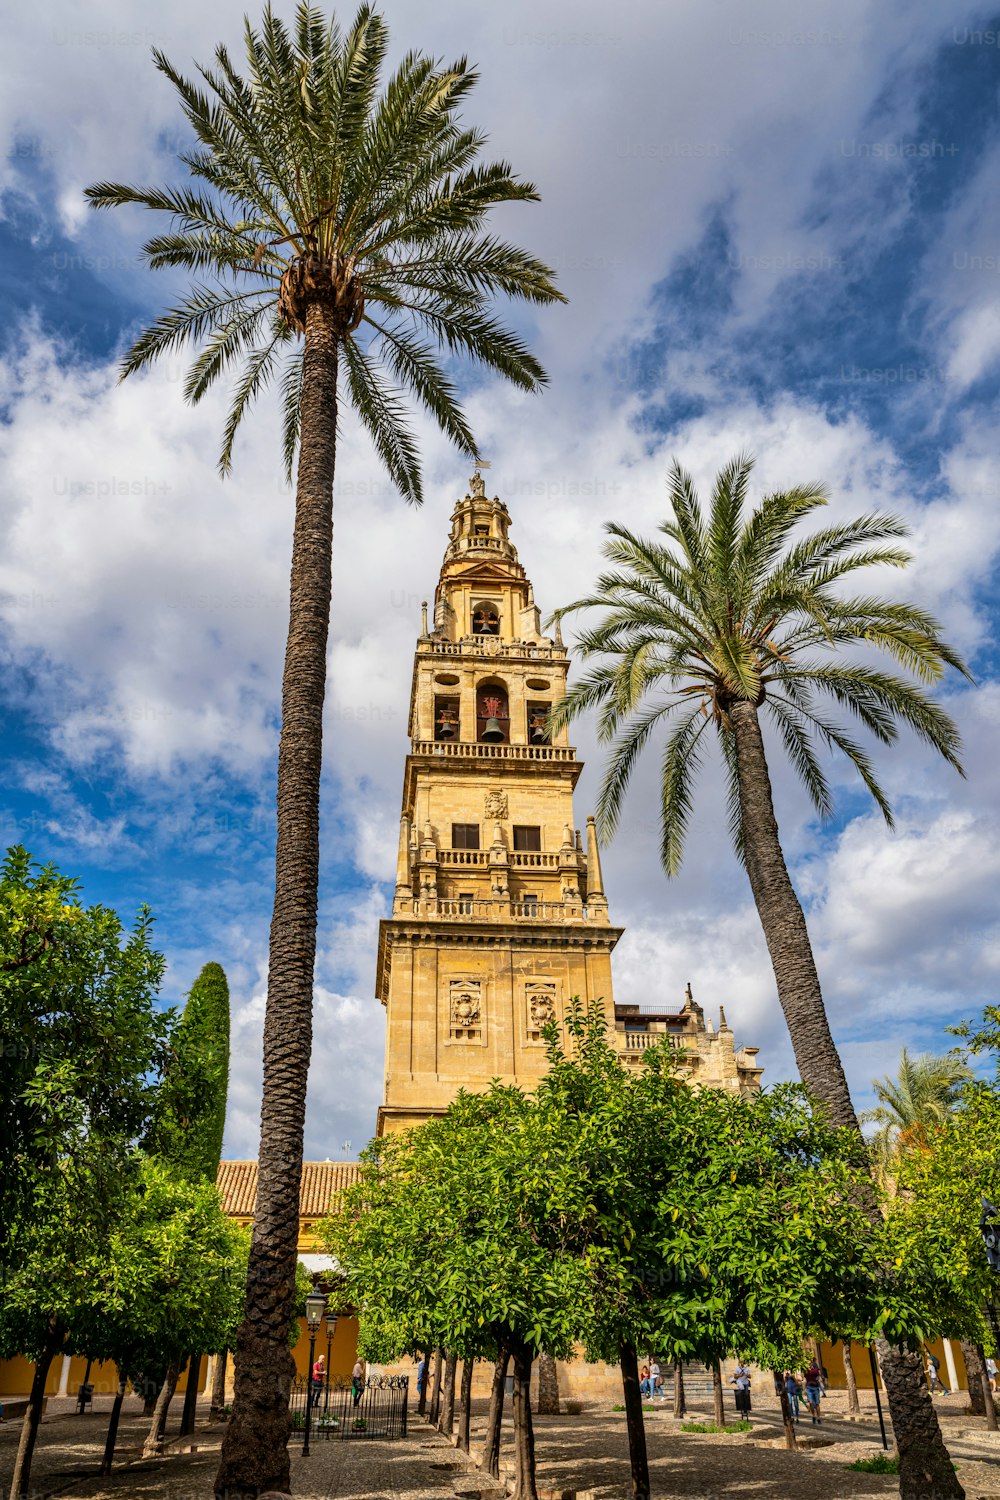 Il Campanile, Torre Campanario presso la Moschea-Cattedrale di Cordoba, Spagna. Un minareto della Mezquita è stato convertito nel campanile della cattedrale.